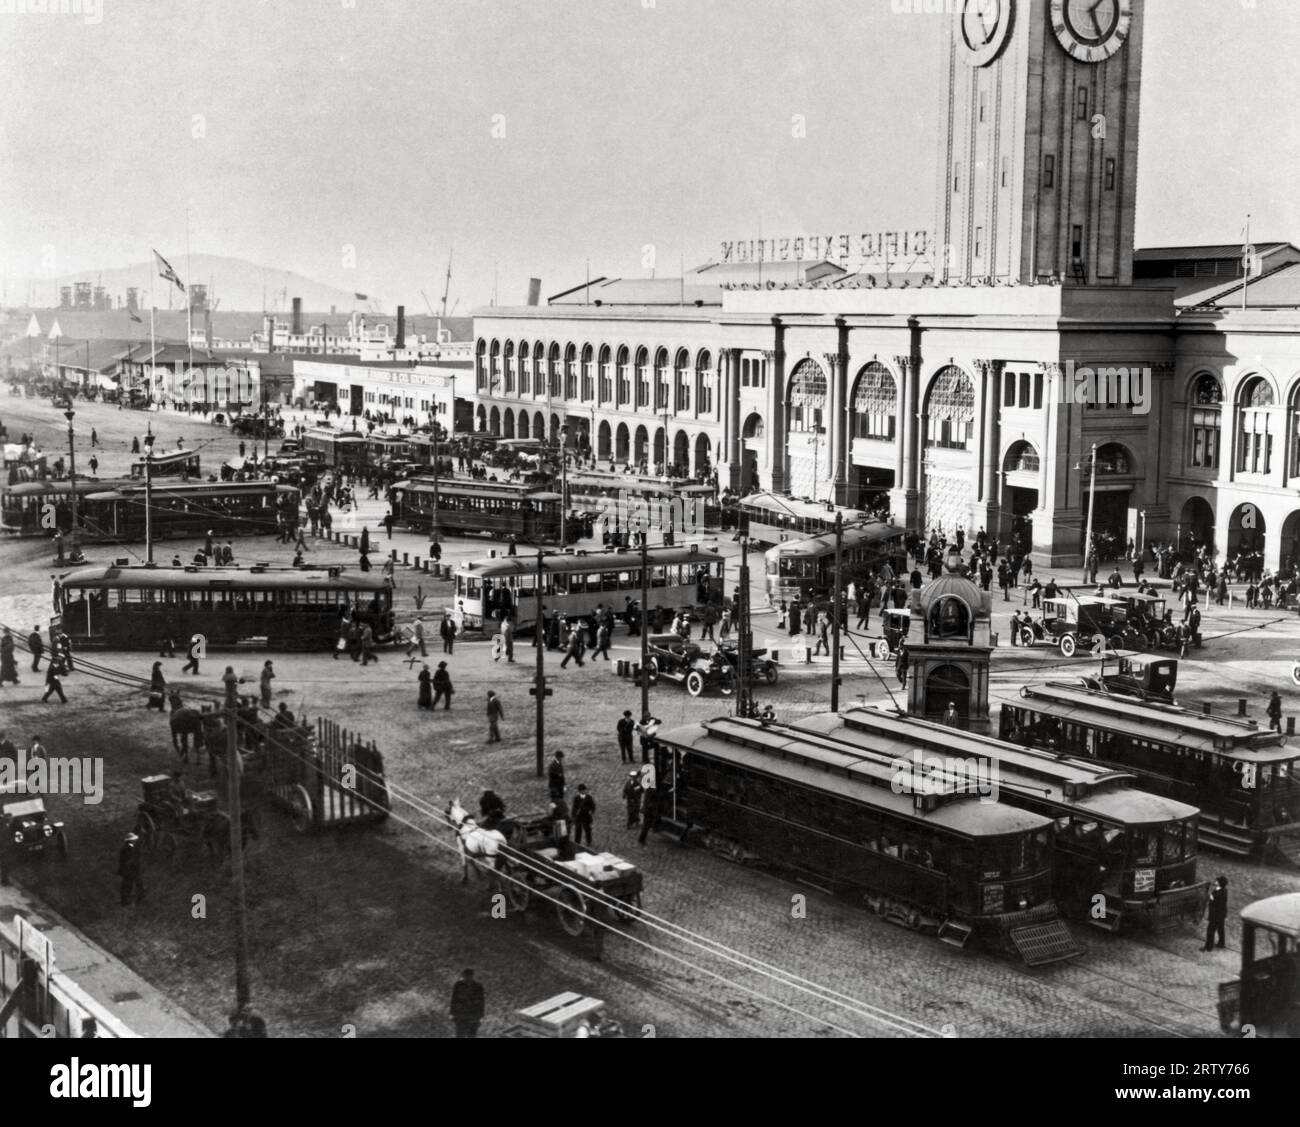 San Francisco, Californie 1915 les voitures de rue et les téléphériques à l'aroound Embarcadero Turn fournissent le transport aux visiteurs de l'exposition internationale Panama-Pacific. Banque D'Images